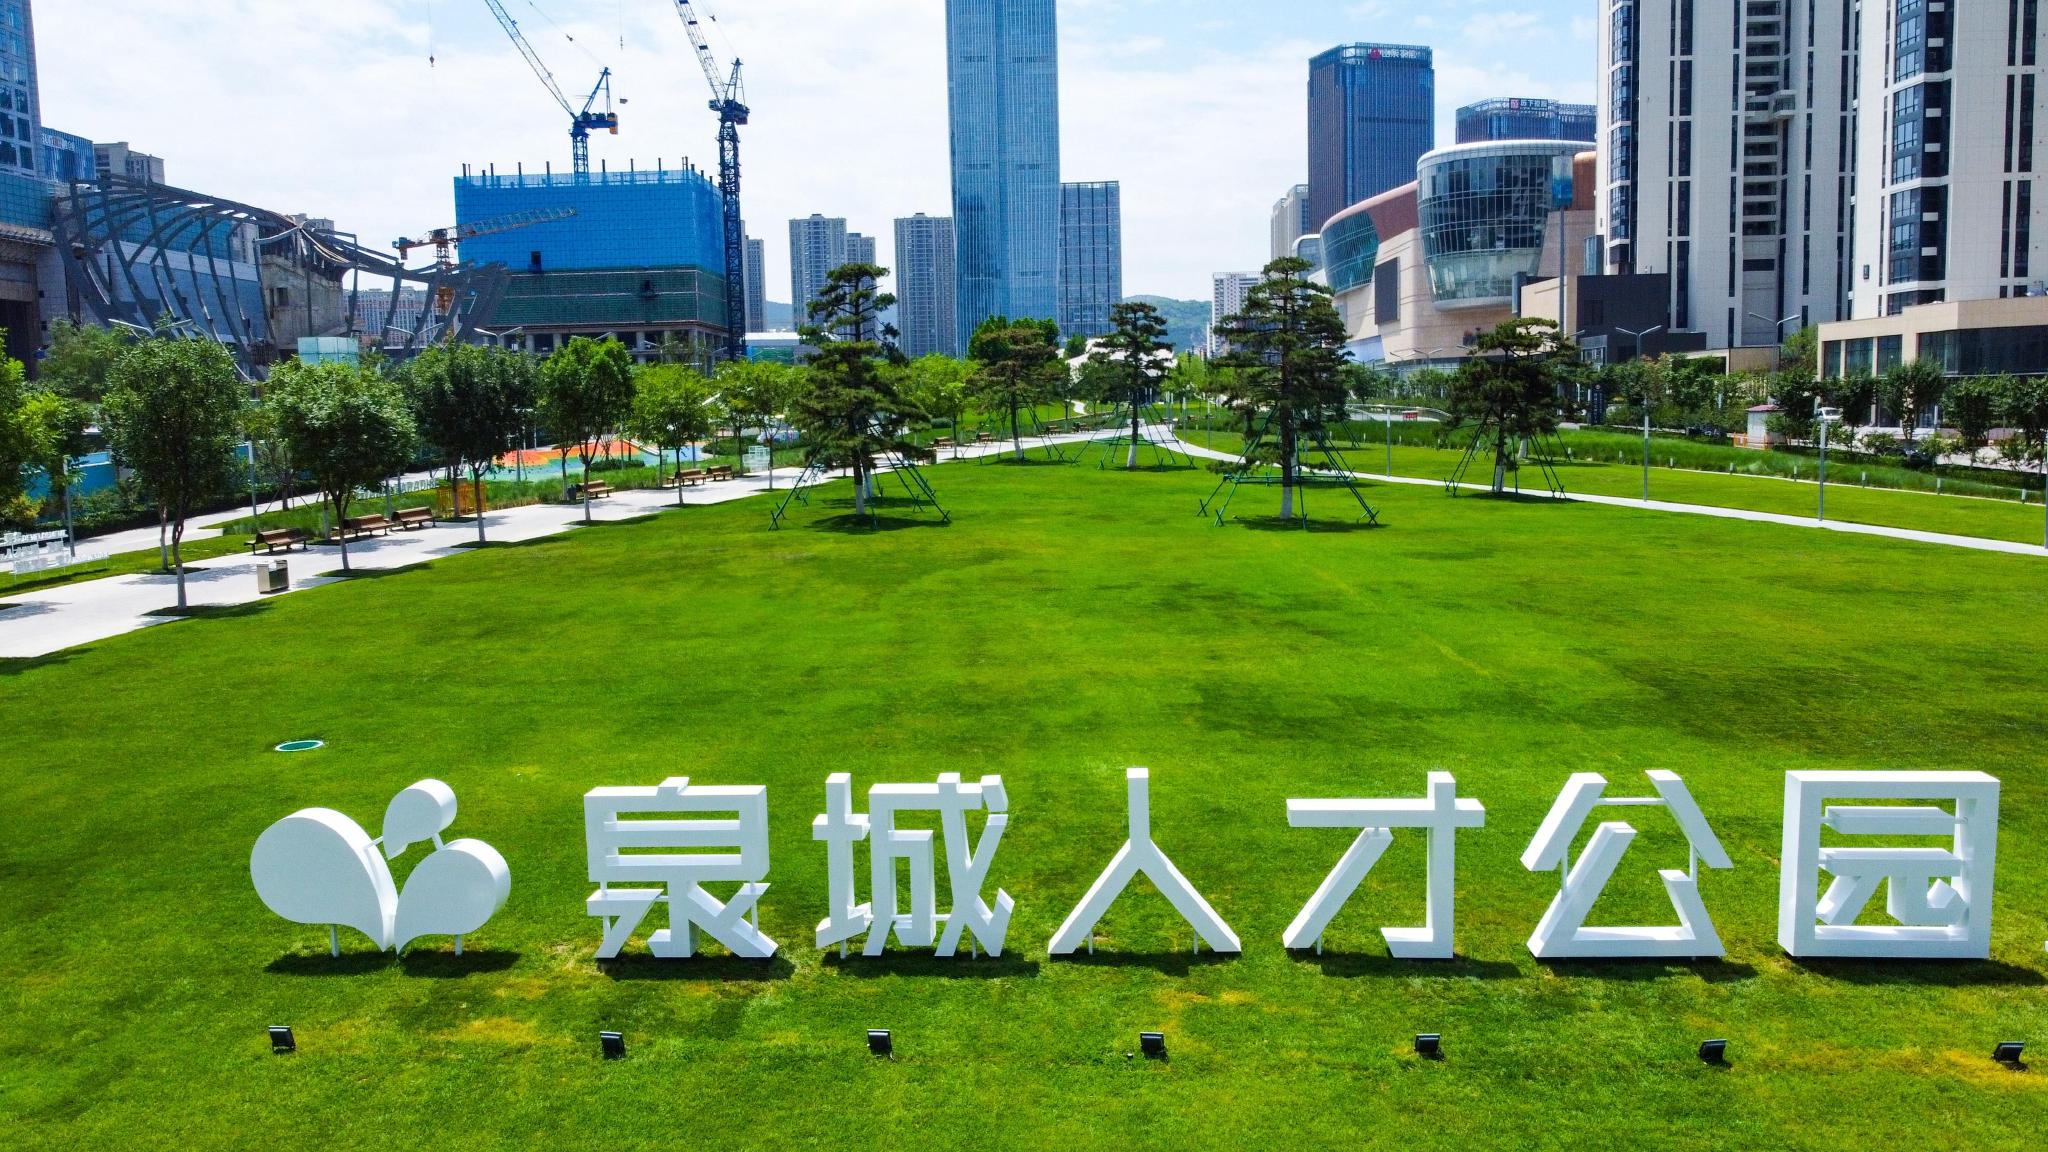 ▲2022年7月4日，山东省济南市，在解放东路与经十路之间的绸带公园，大型草坪上立起“泉城人才公园”的中英文标识，建成多年的绿地公园有了自己的新名字。图/IC photo